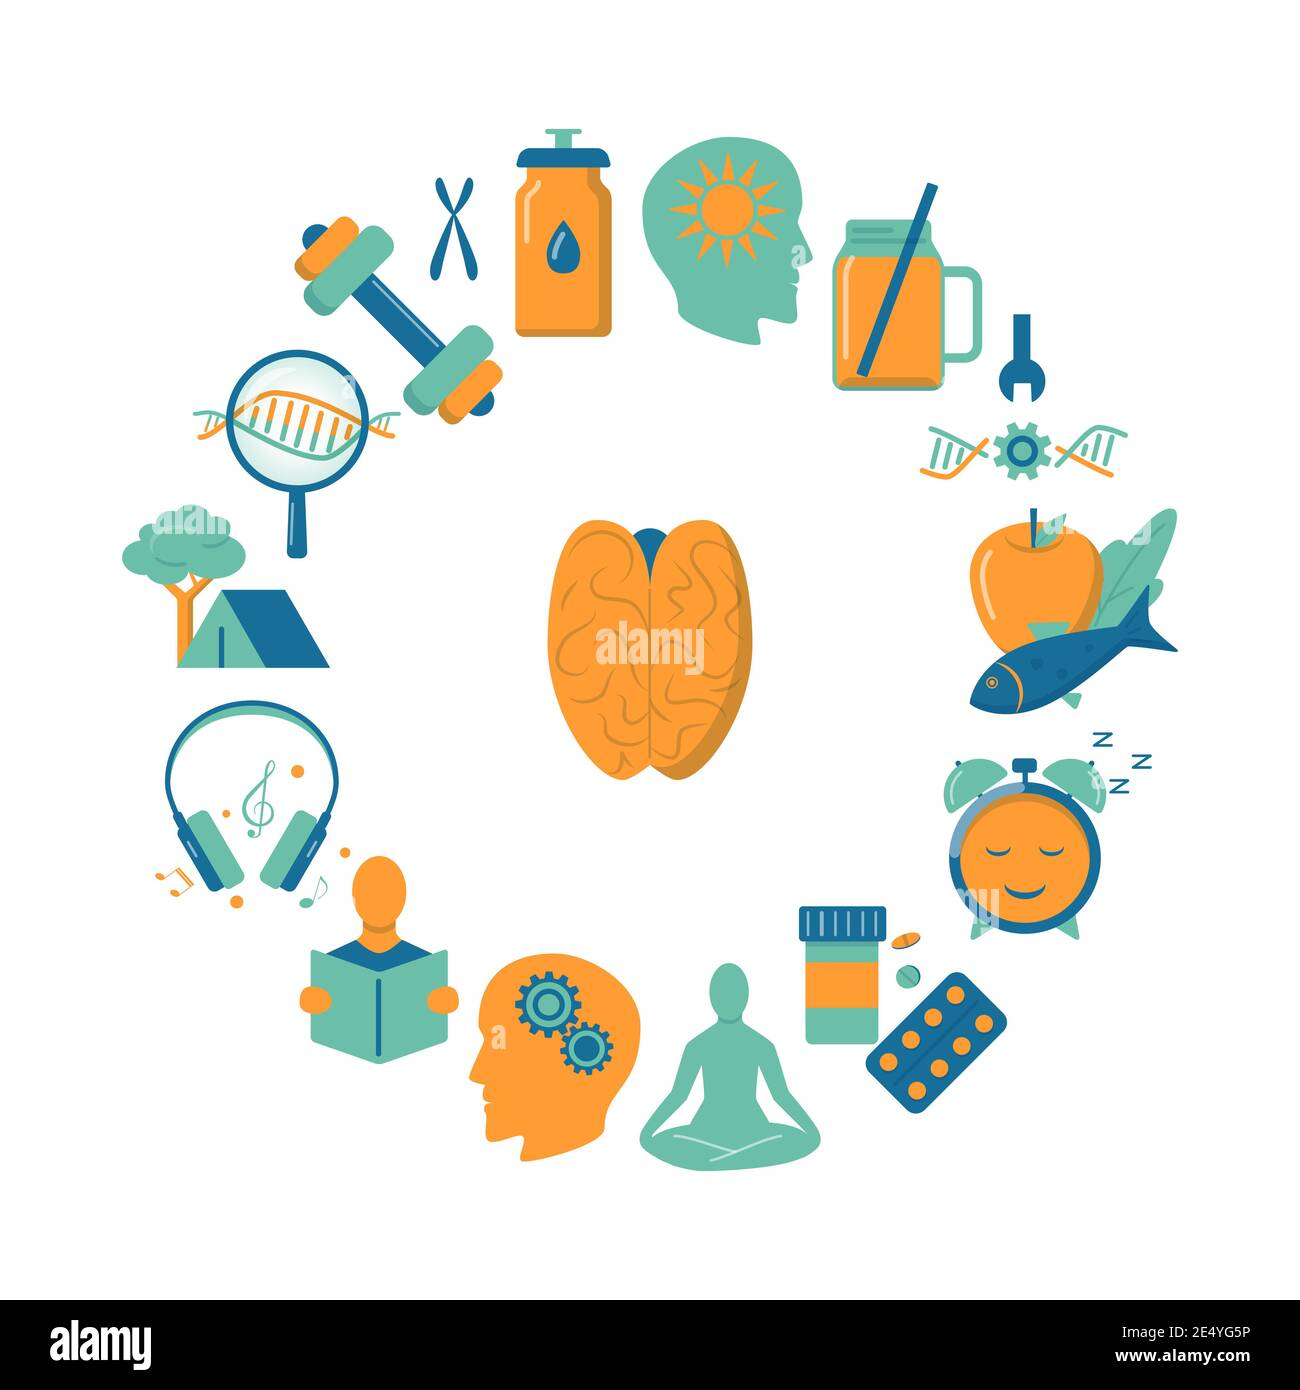 Biohacking runder Concept Banner mit Icons im flachen Stil. Poster zum Thema Gesundheitsverbesserung. Vektorgrafik. Stock Vektor